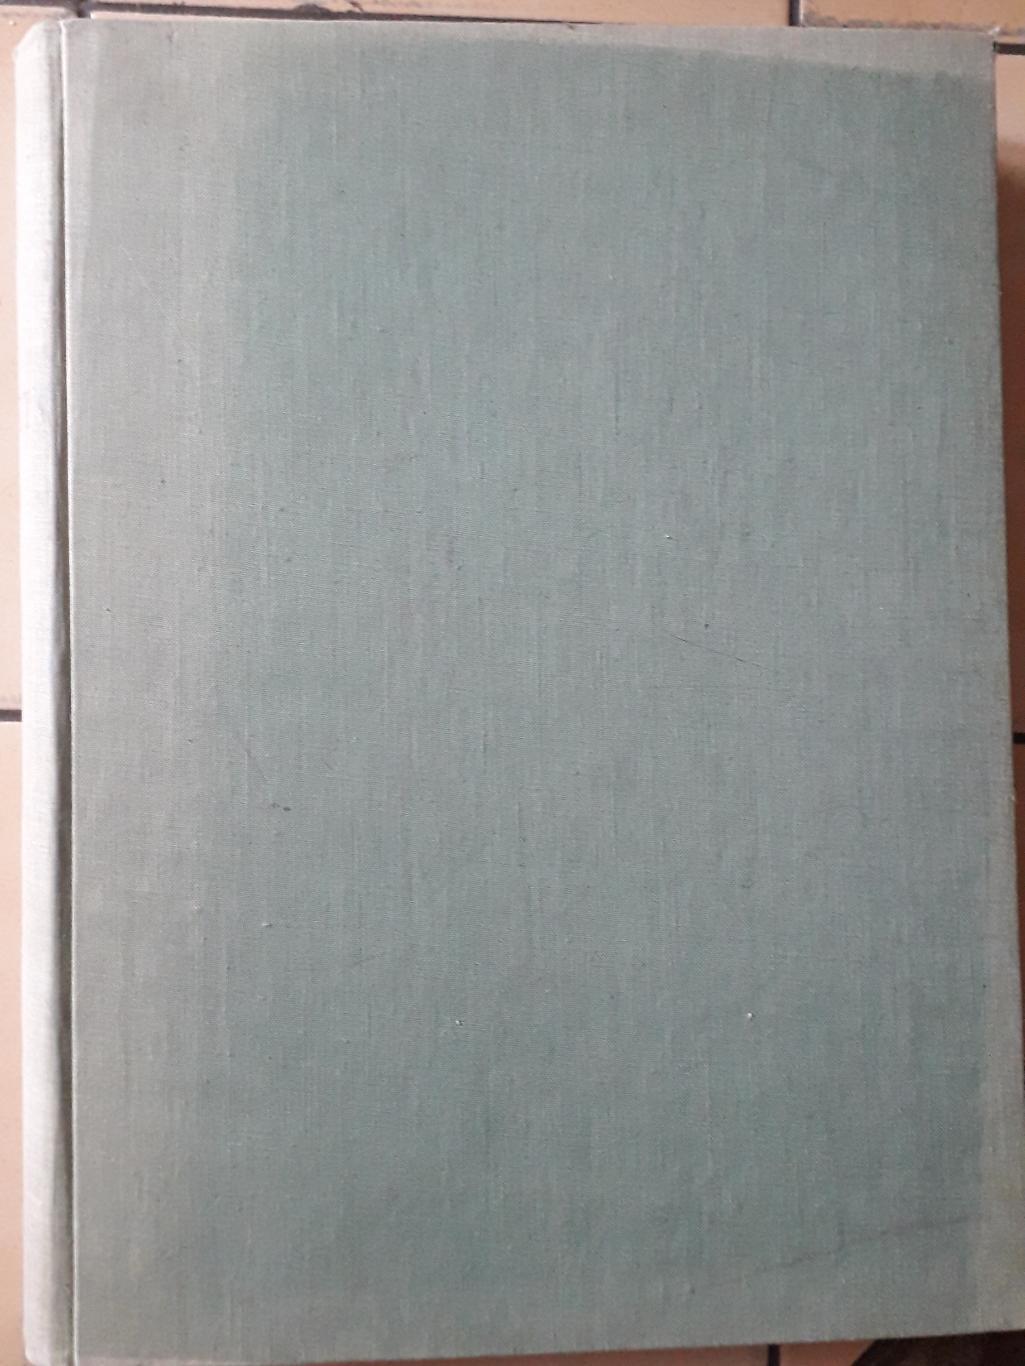 Журнал Старт, весь 1964 год в одной книге. 2